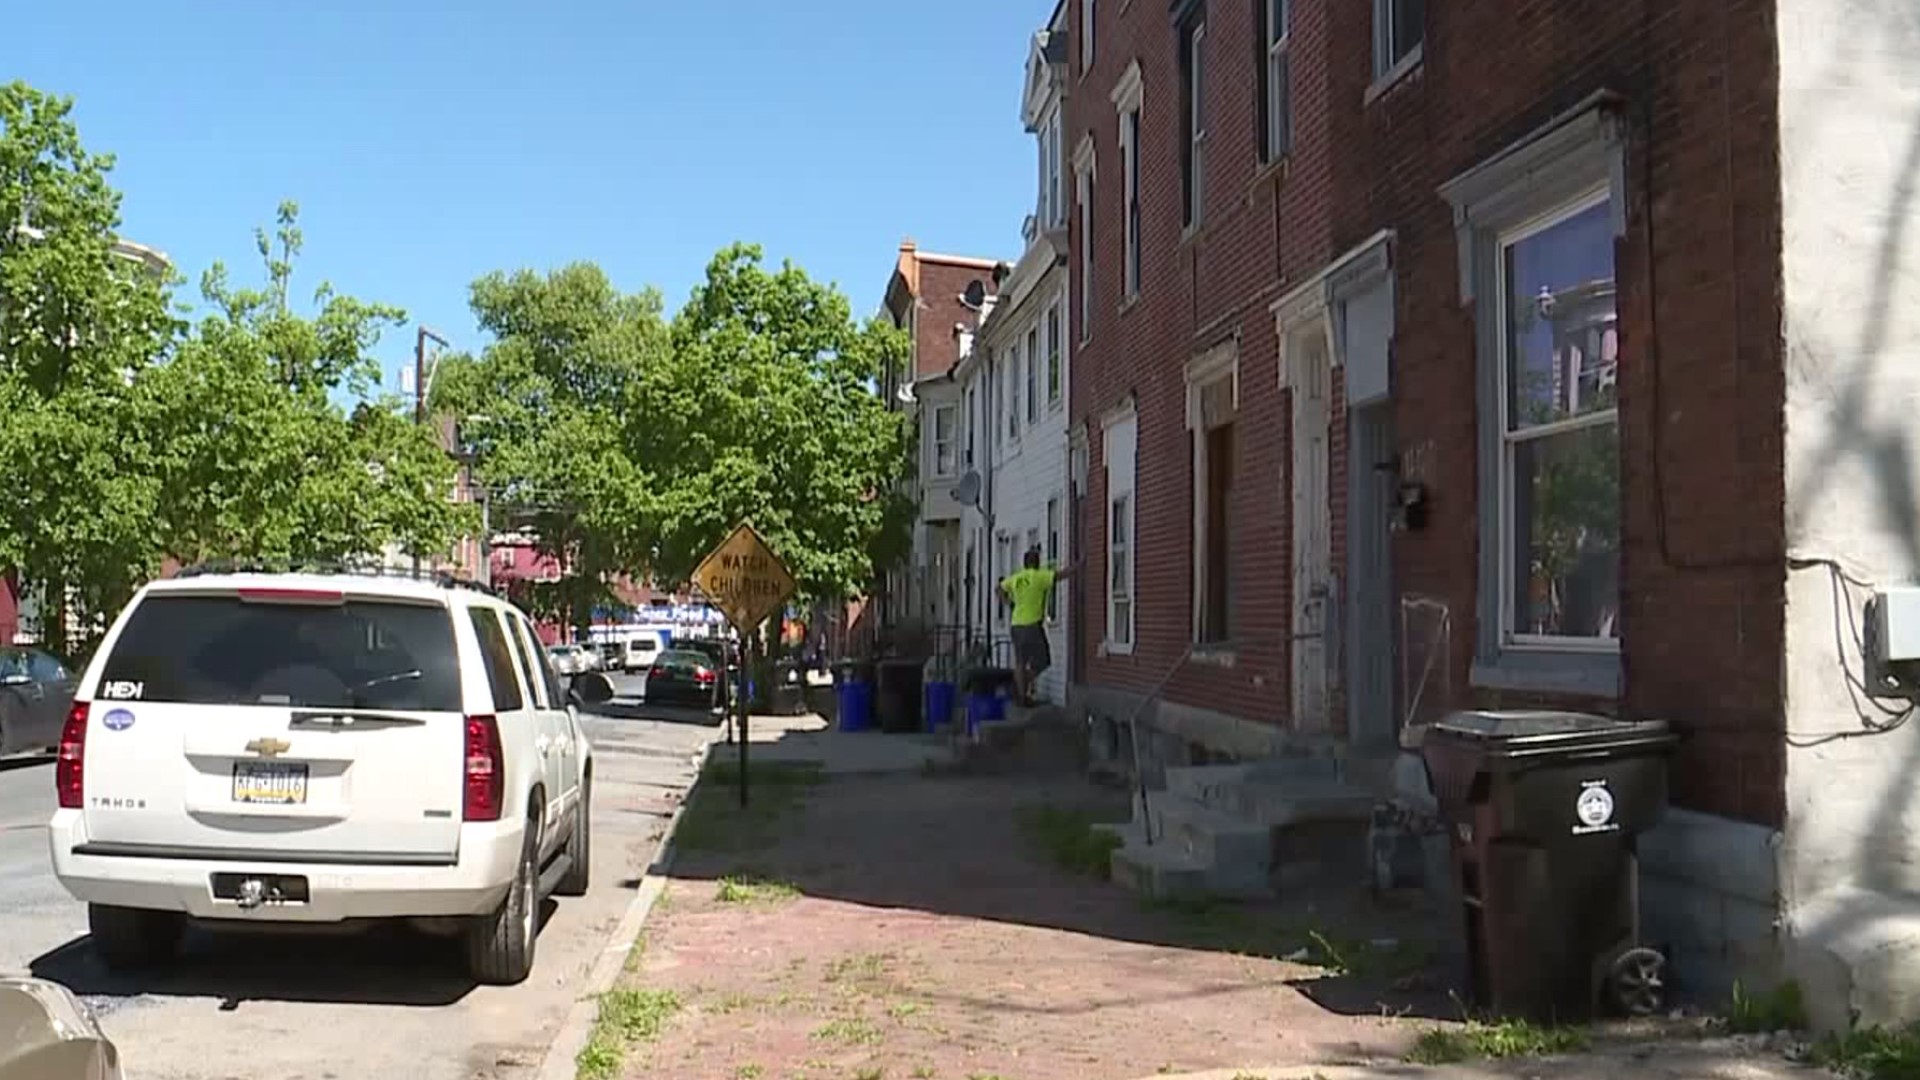 Fighting blight in Allison Hill: Harrisburg residents hopeful for change